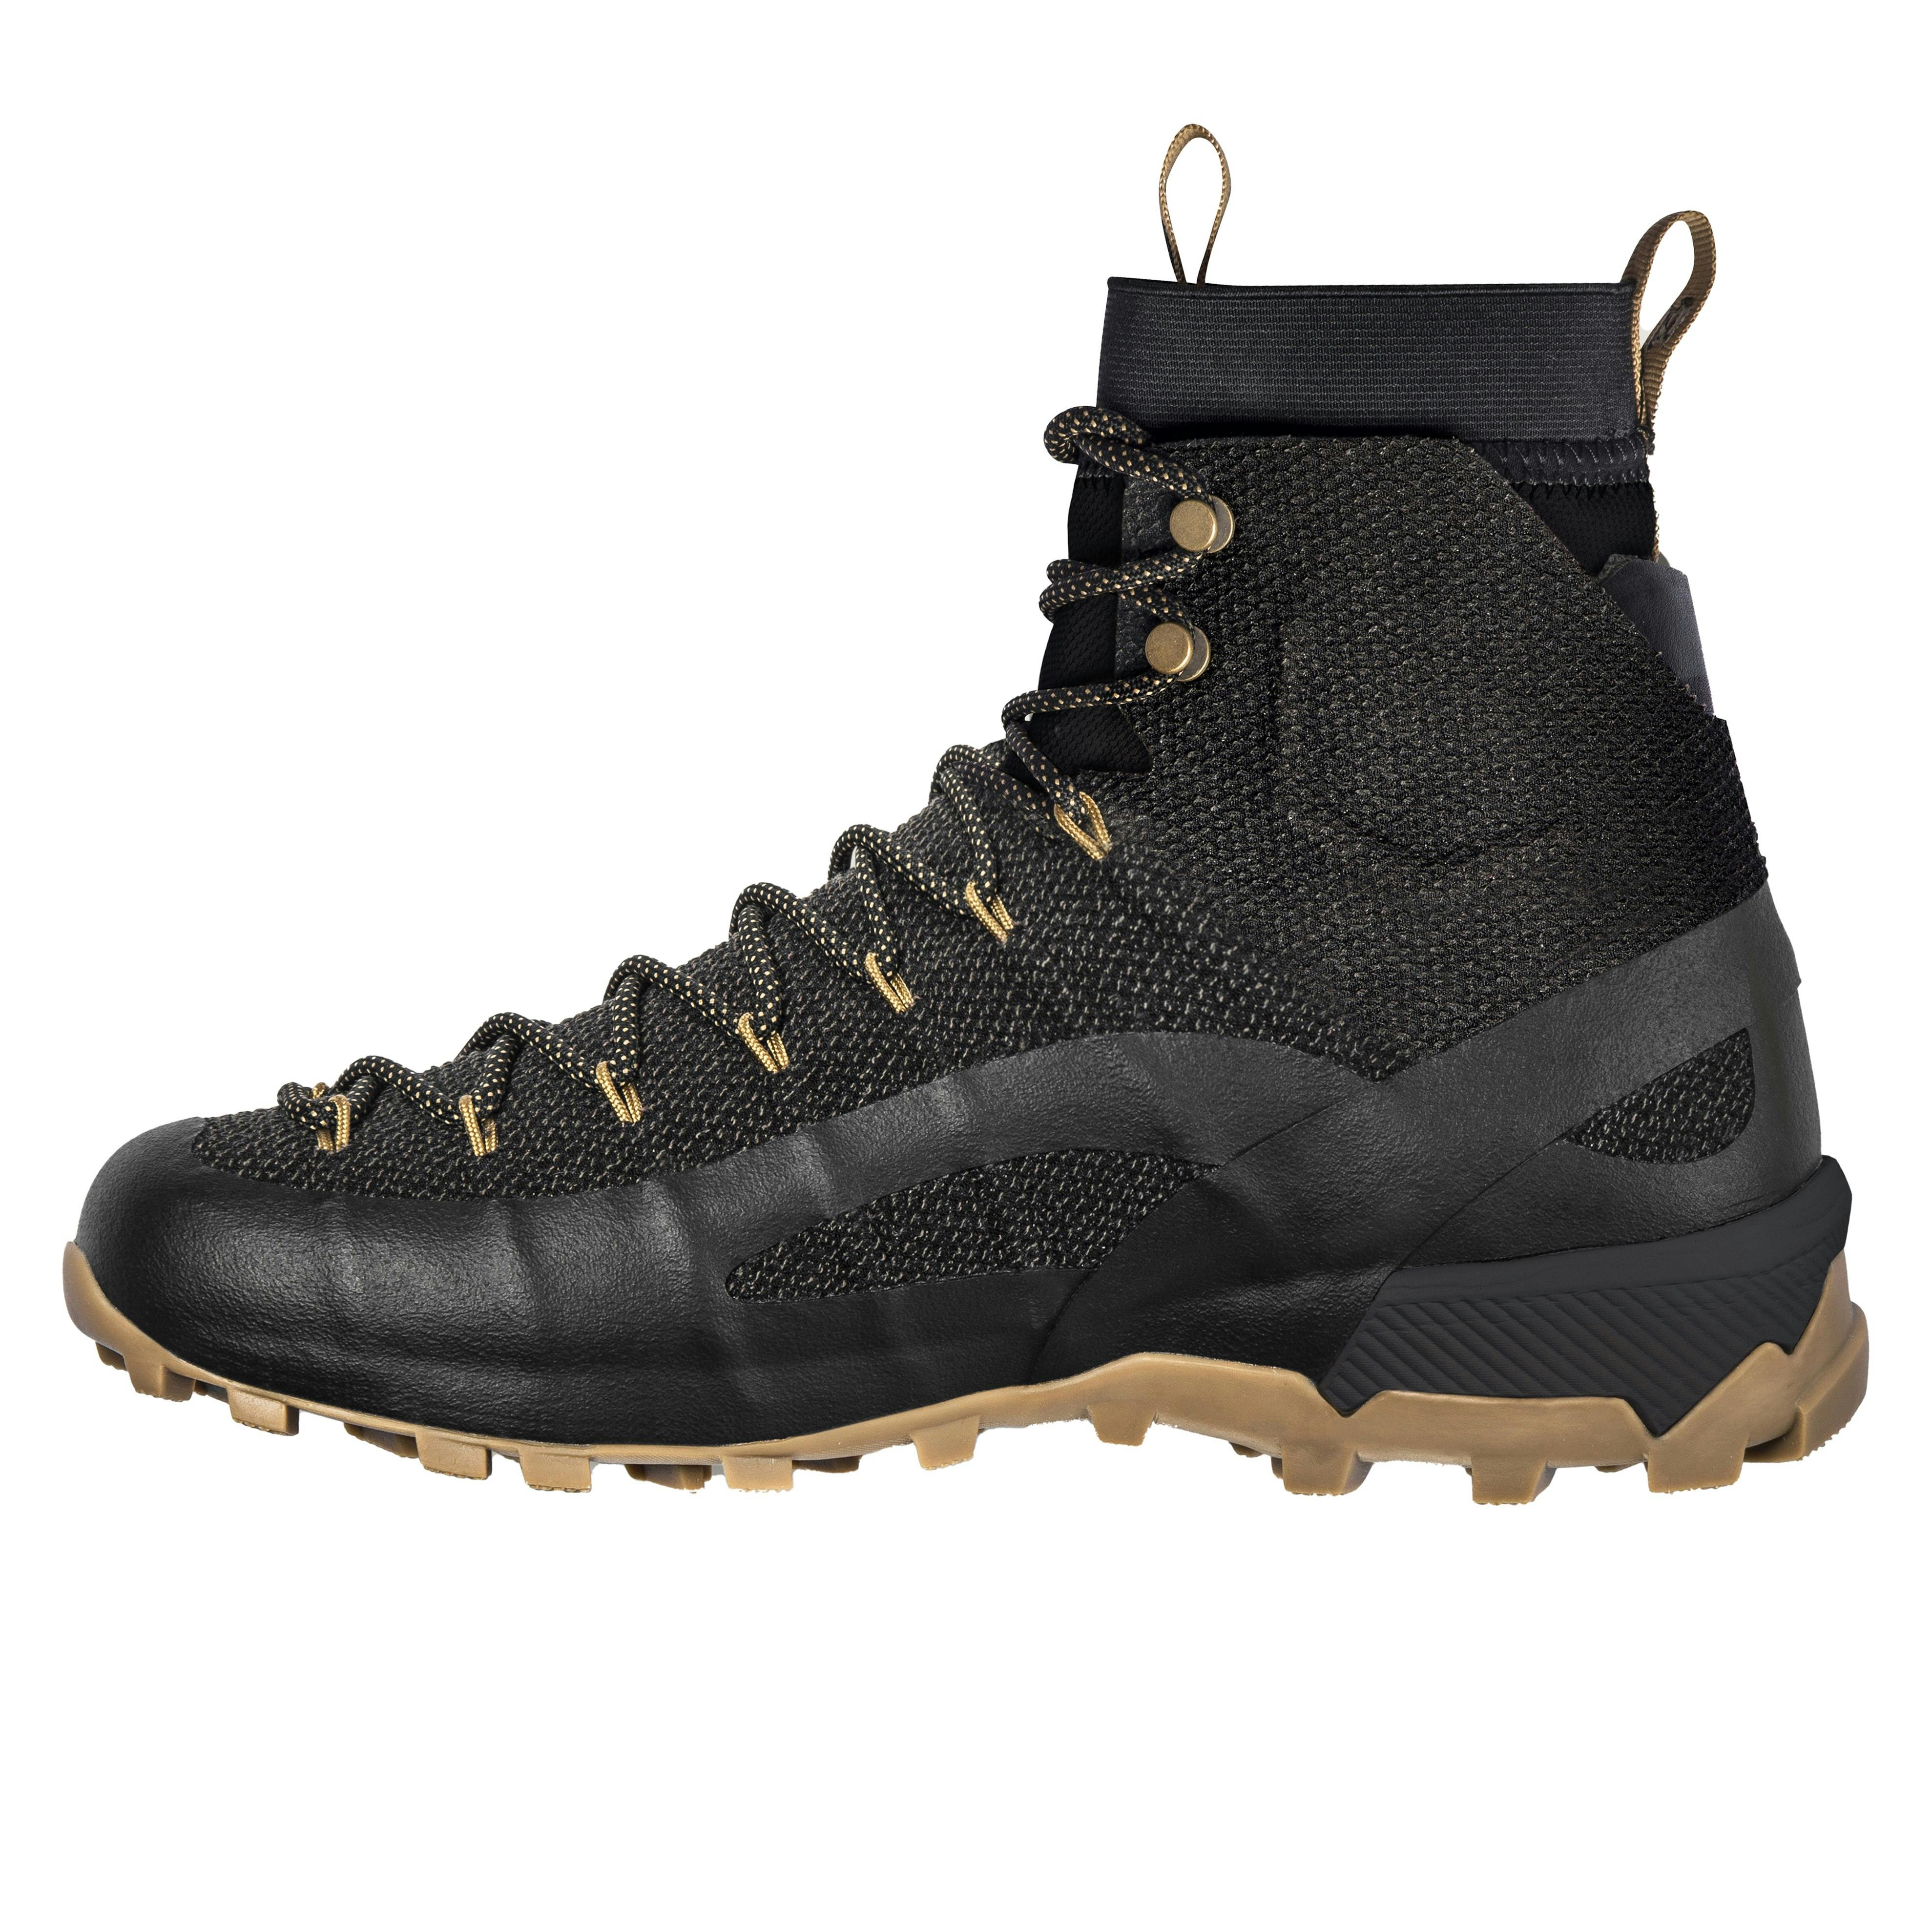 Naglev Combat Waterproof Boot - Huckberry | Black Boots | Hiking